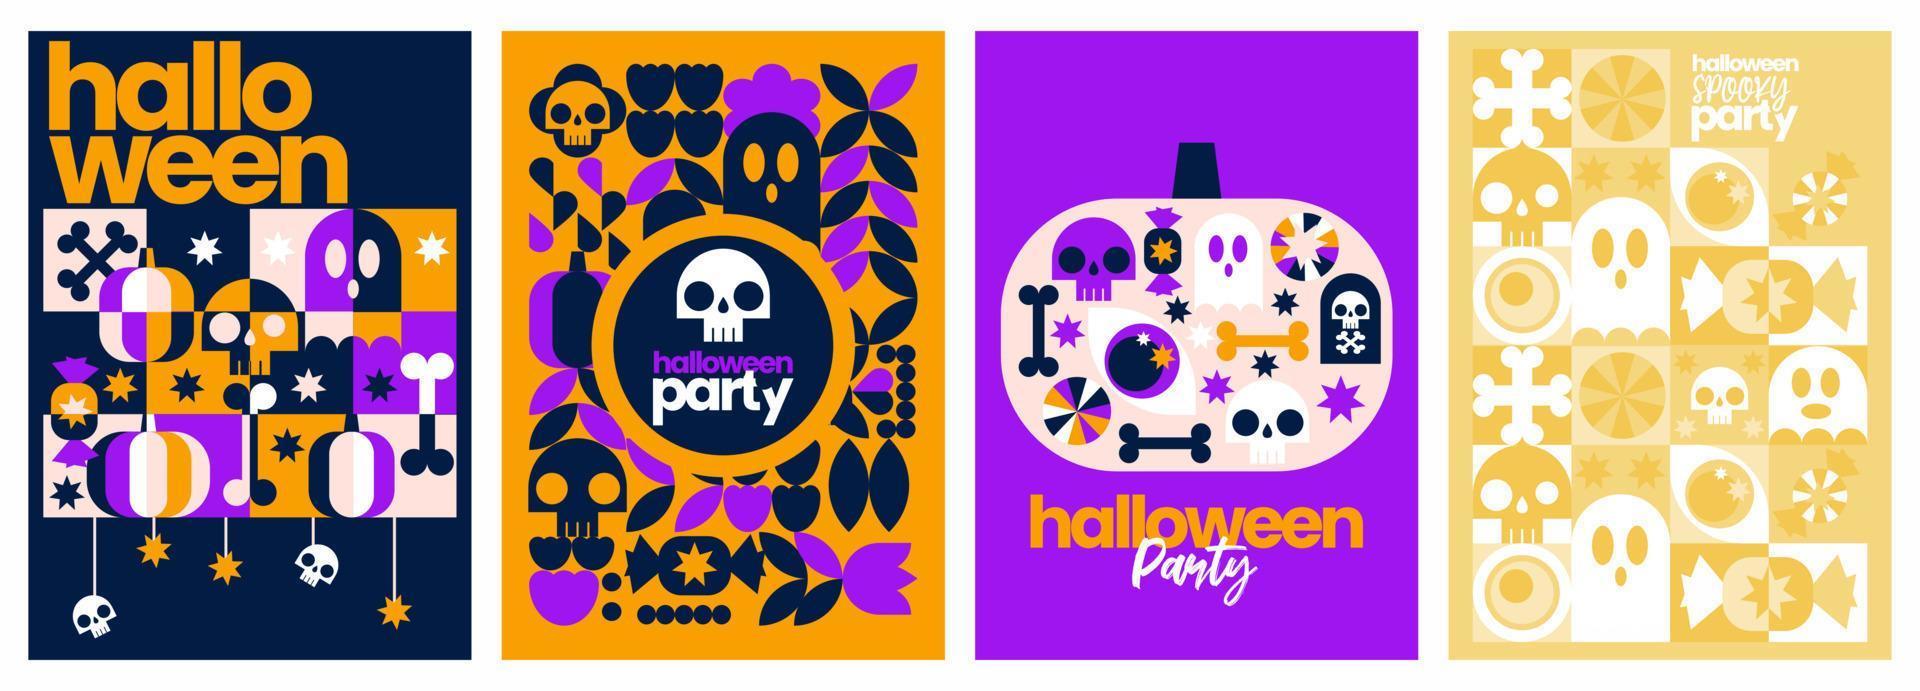 Halloween-feest geometrische collectie set met spook, pompoenen, snoep geïsoleerde vectorelementobjecten vector